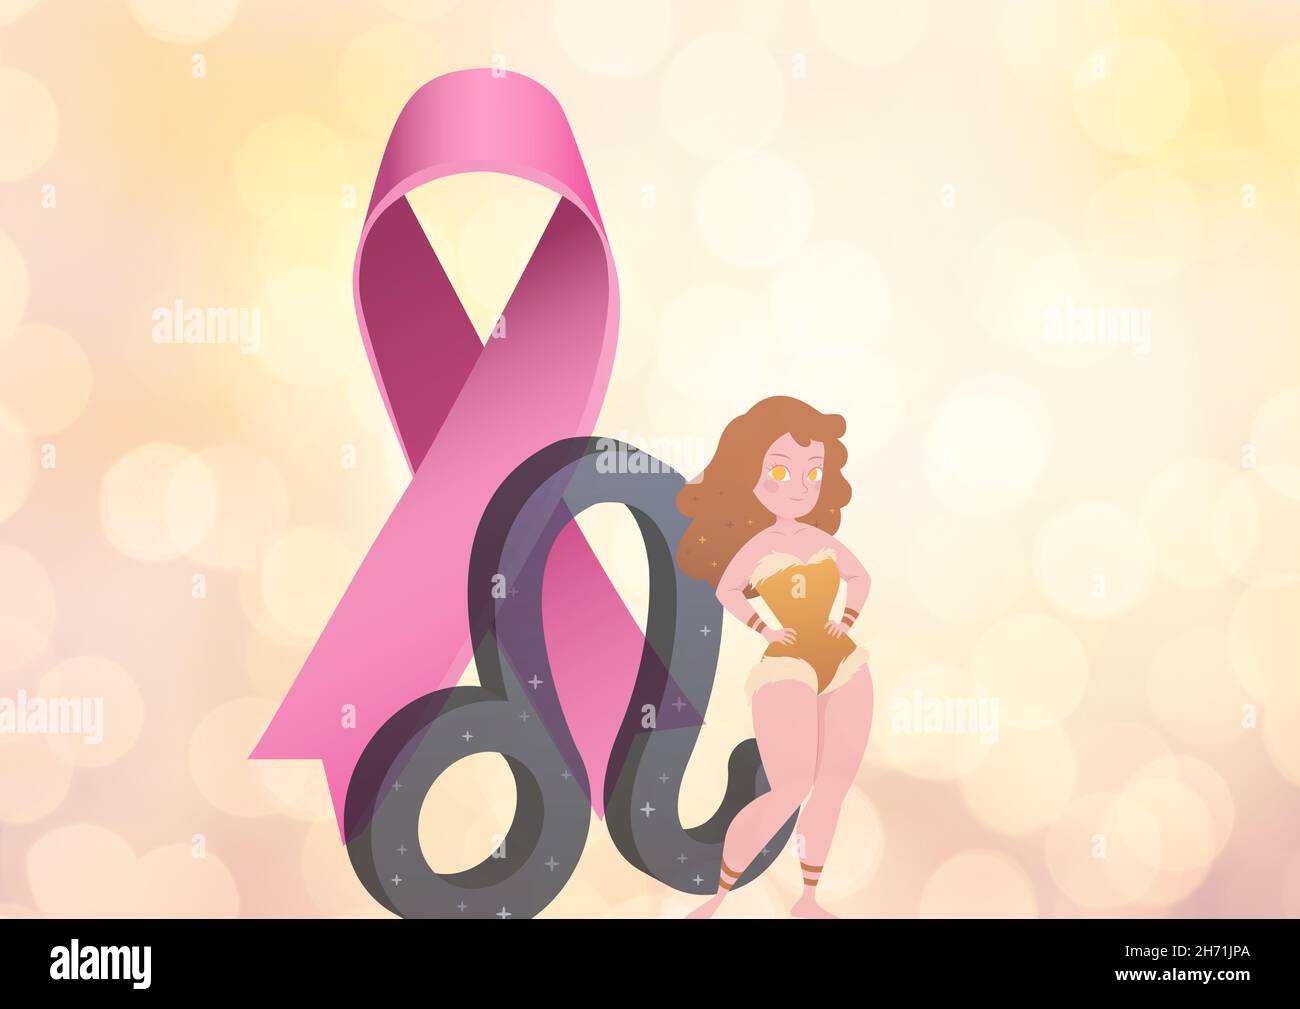 Símbolo de Tauro, cinta rosa e icono de sirena contra manchas de luz sobre fondo degradado Foto de stock